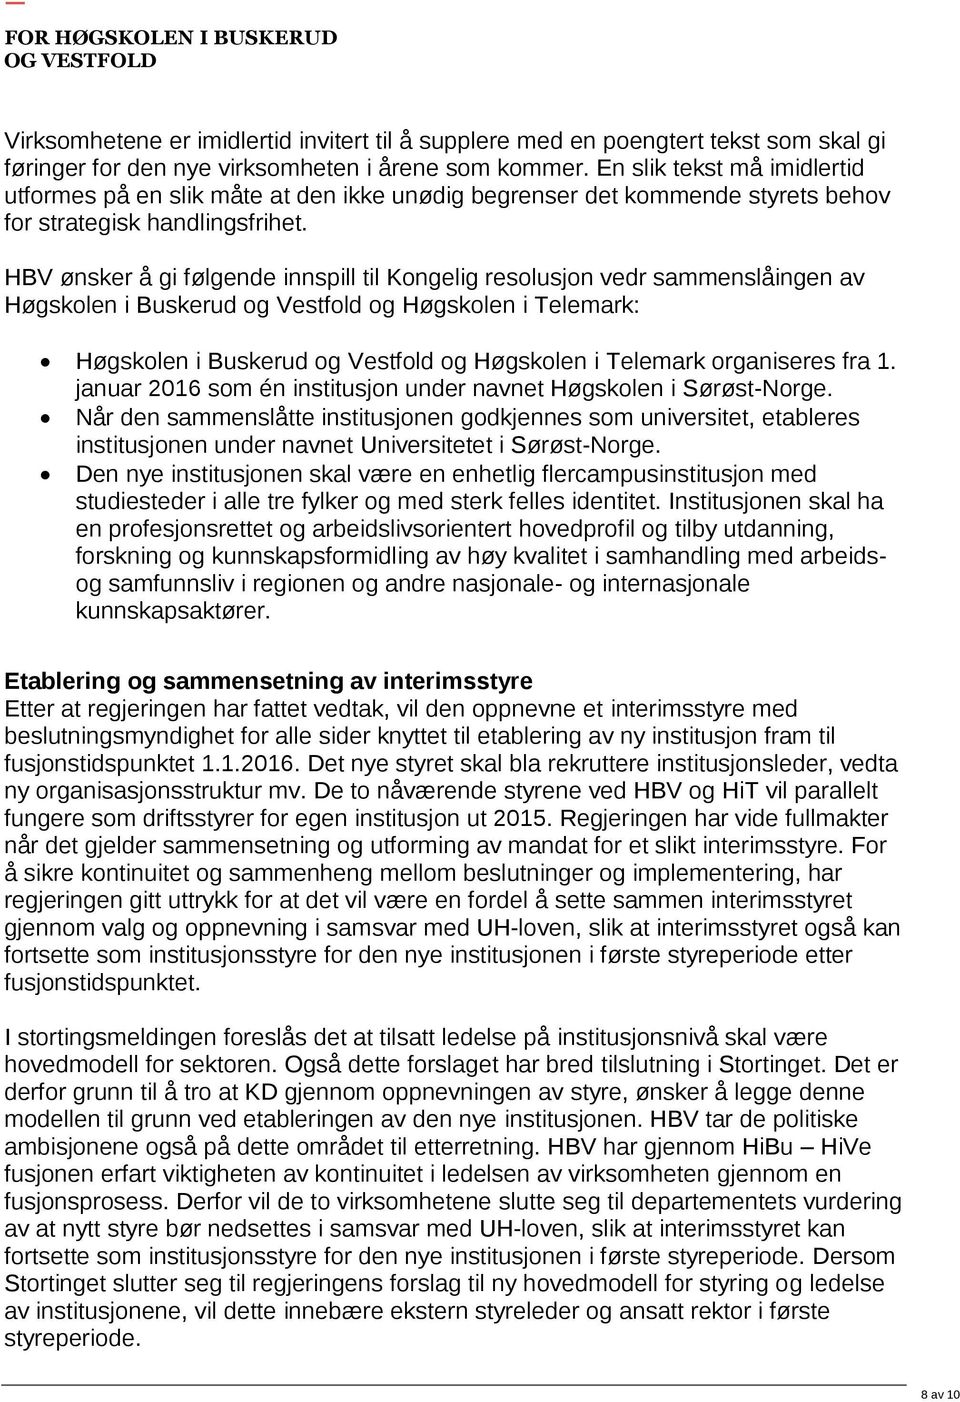 HBV ønsker å gi følgende innspill til Kongelig resolusjon vedr sammenslåingen av Høgskolen i Buskerud og Vestfold og Høgskolen i Telemark: Høgskolen i Buskerud og Vestfold og Høgskolen i Telemark